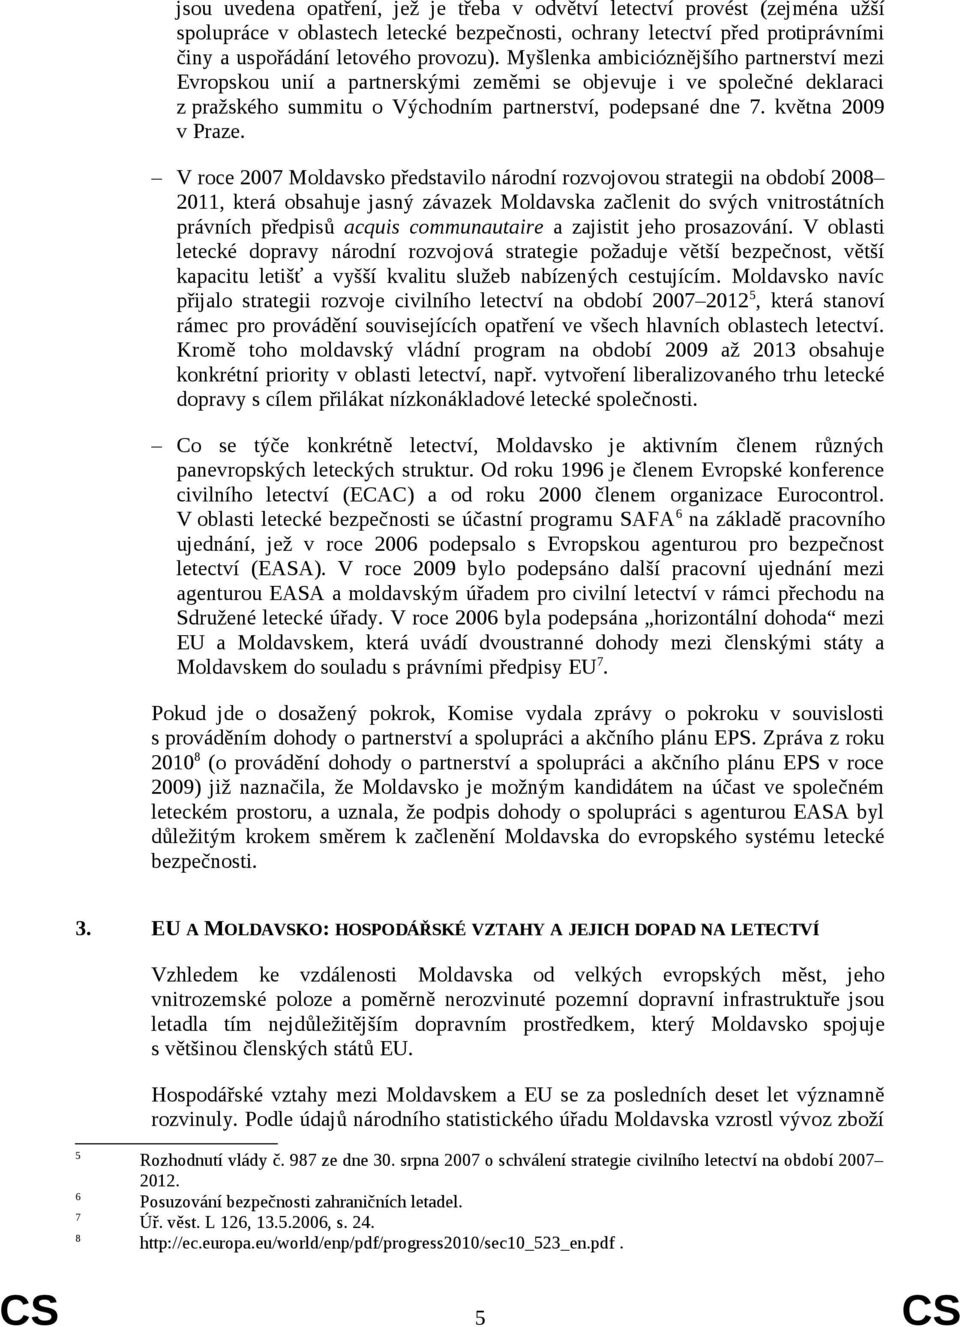 V roce 2007 Moldavsko představilo národní rozvojovou strategii na období 2008 2011, která obsahuje jasný závazek Moldavska začlenit do svých vnitrostátních právních předpisů acquis communautaire a